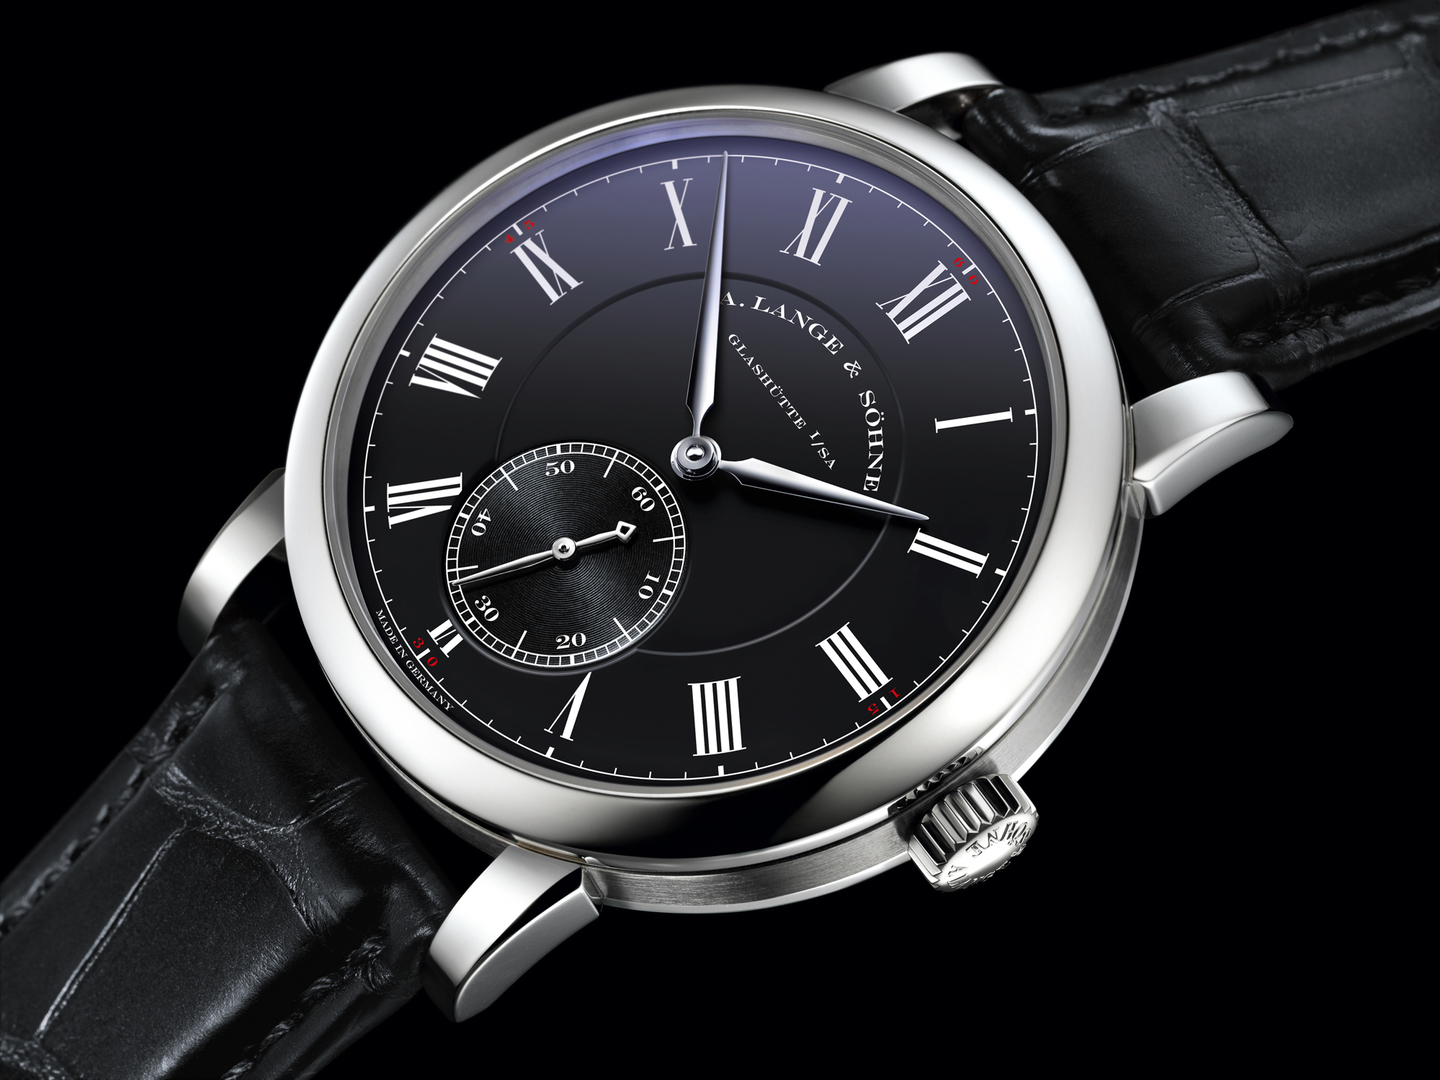 2016 Watch Recommended : Review Richard Lange Pour le Mérite Watch